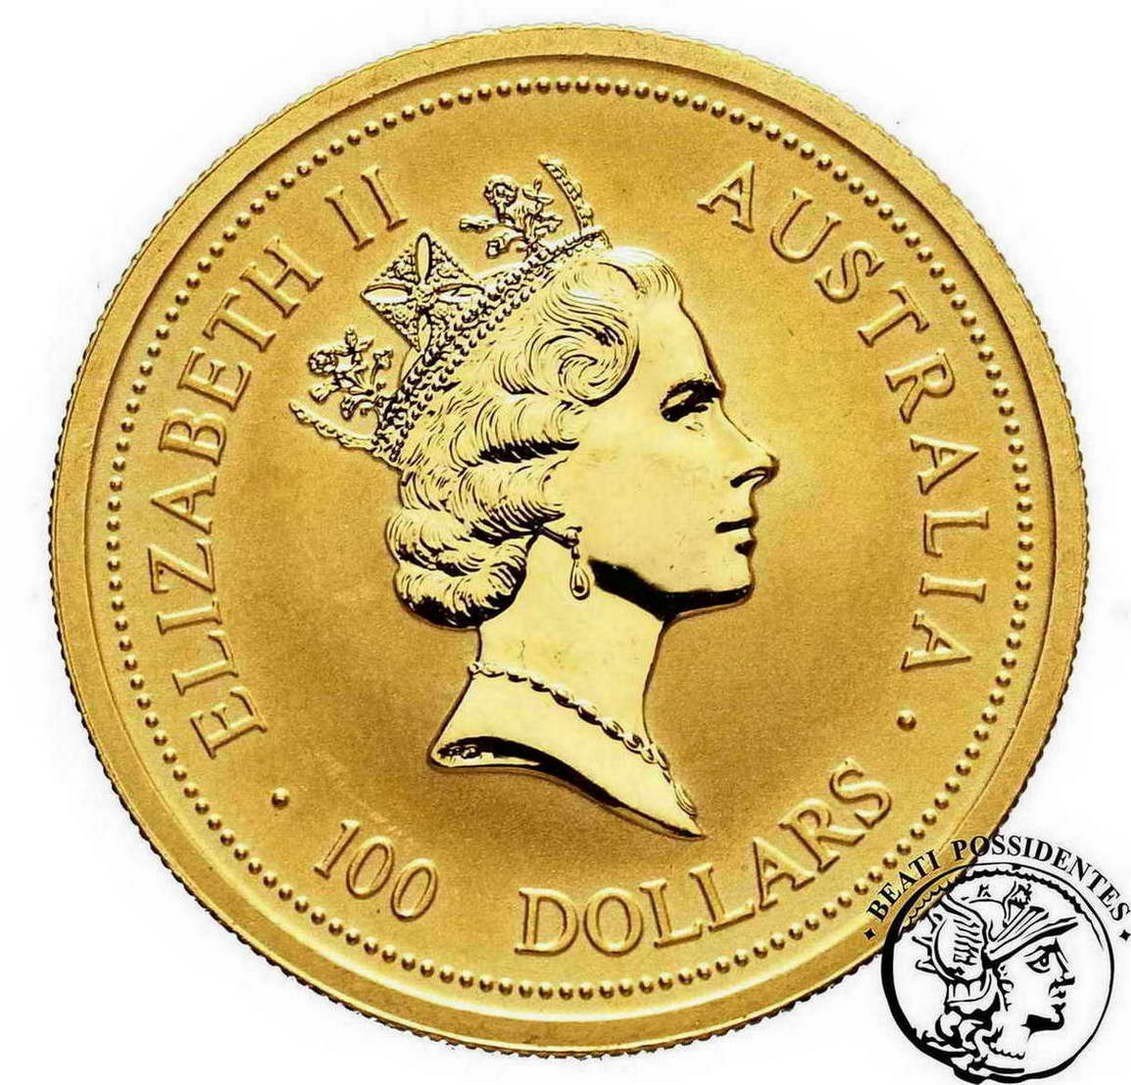 Australia Elżbieta II 100 $ dolarów 1998 kangur st. L